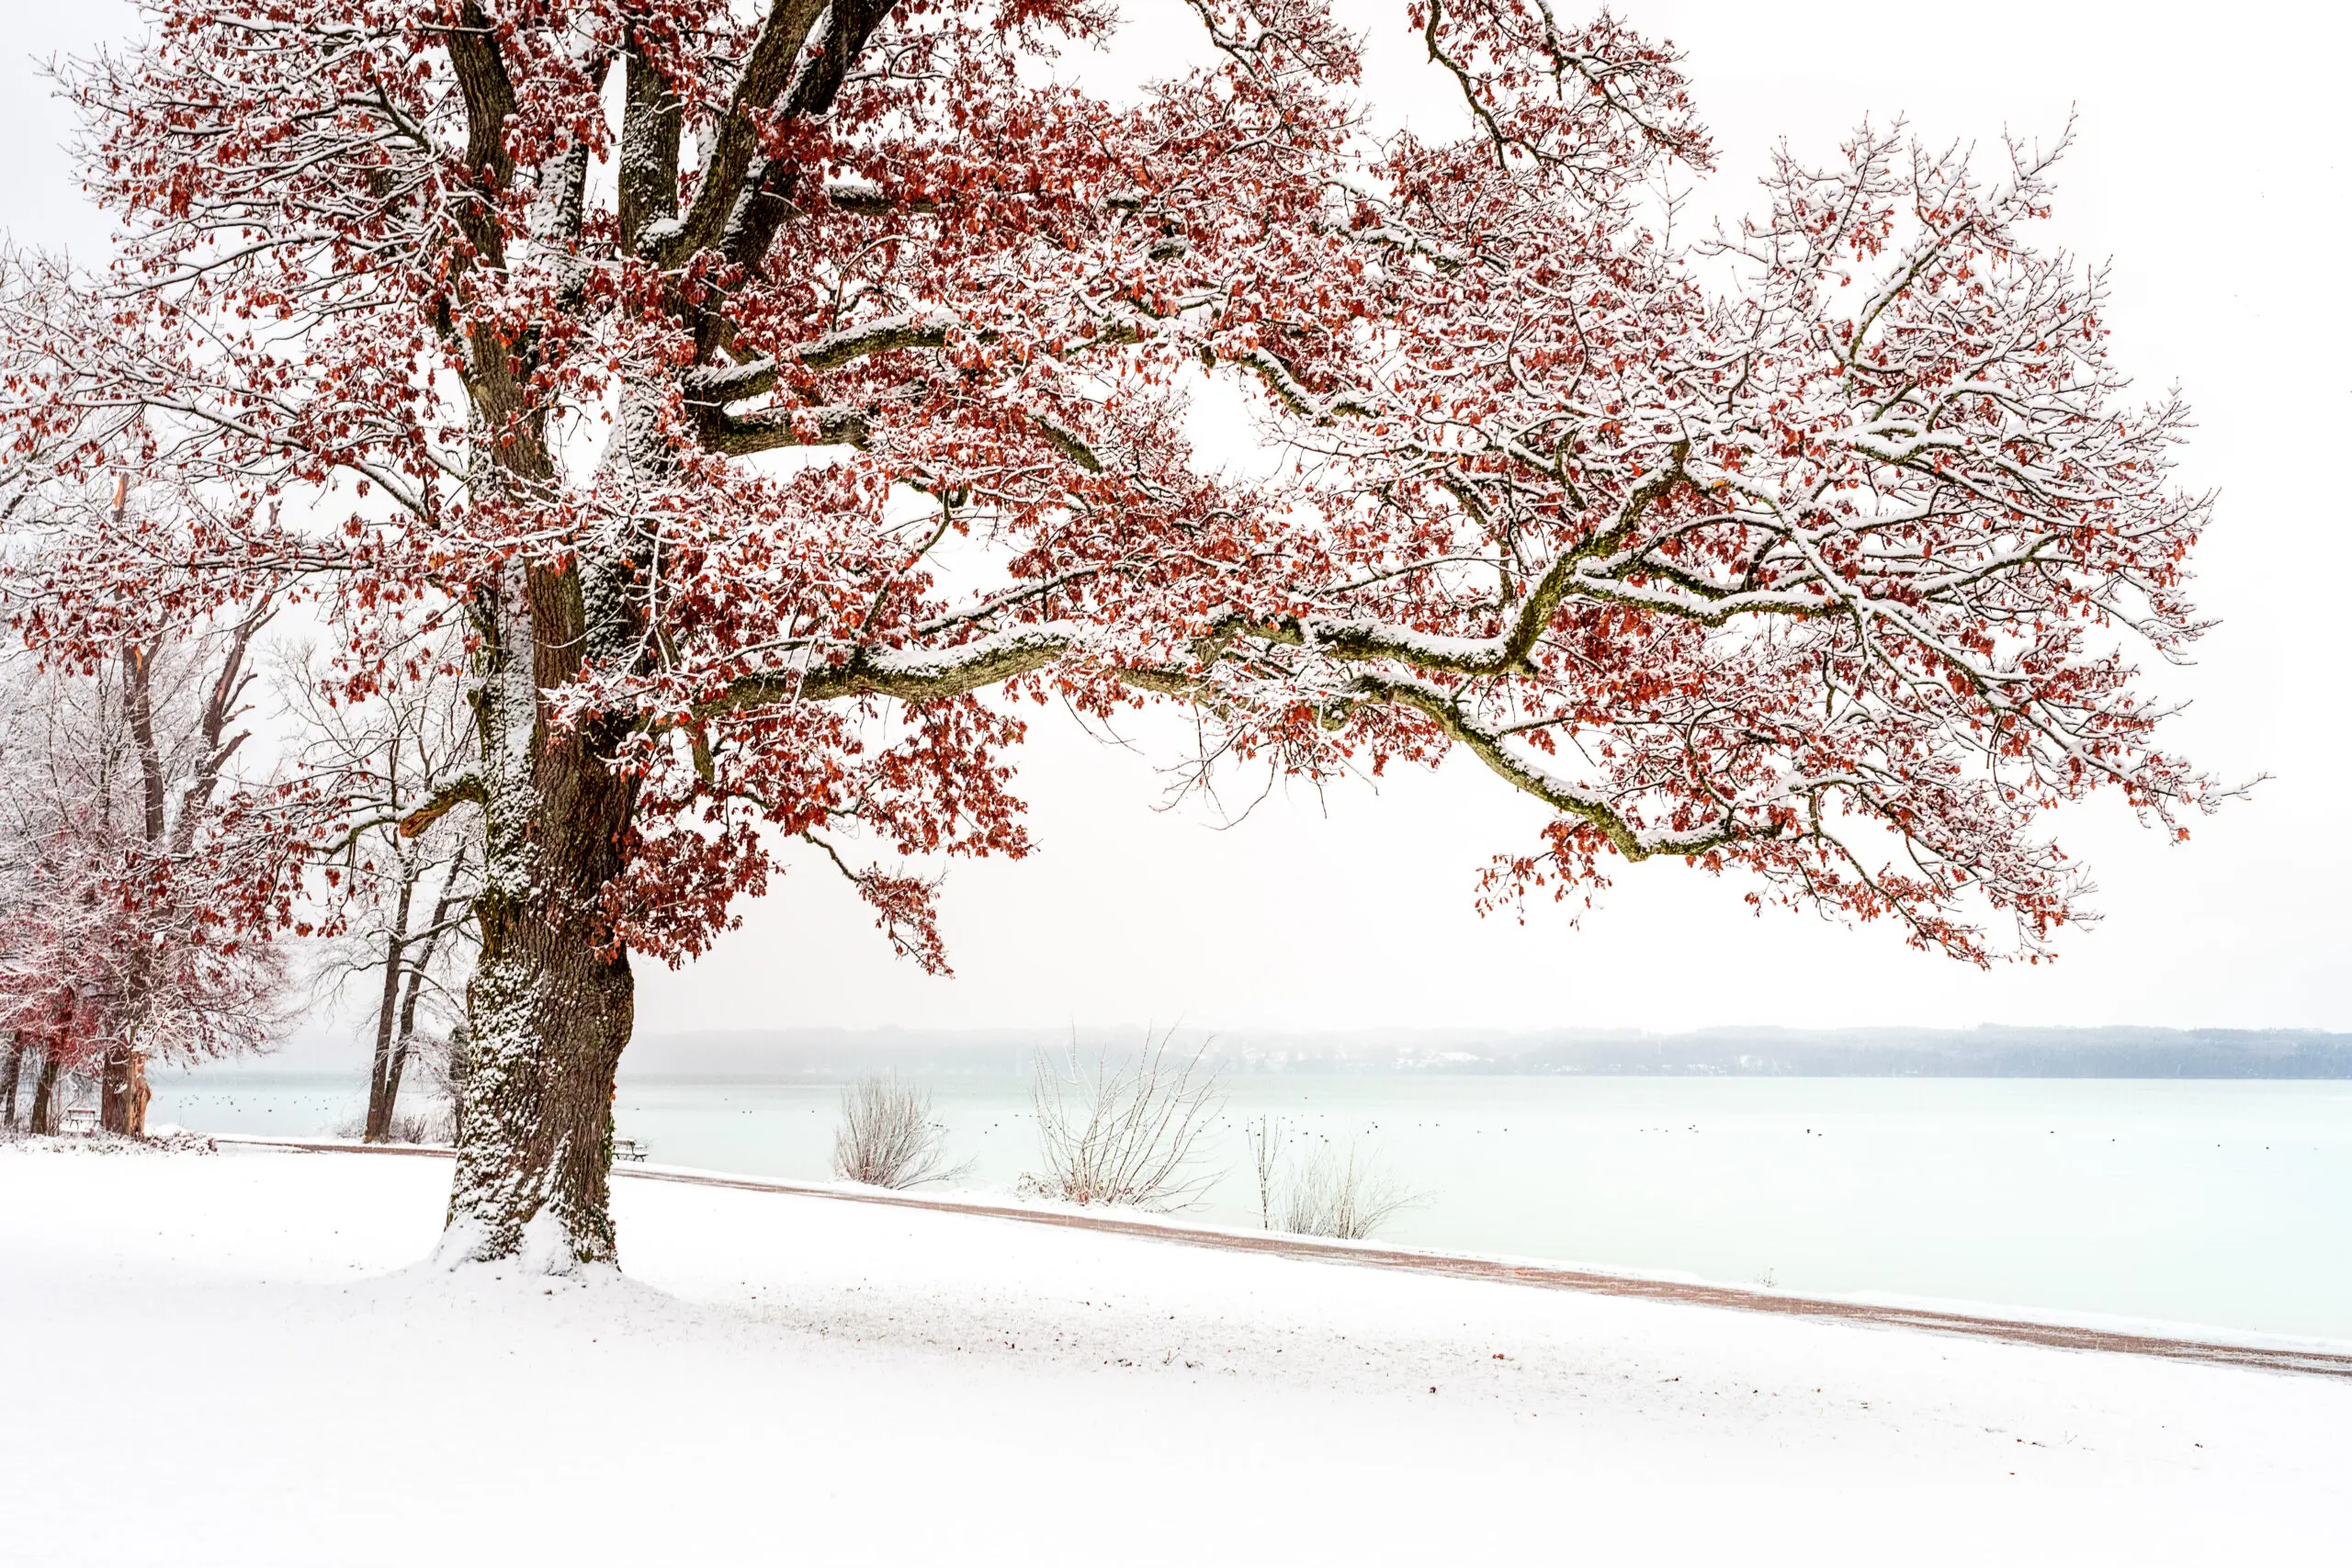 Wandbild (6355) Winter is coming by Ulrike Eisenmann,1x.com präsentiert: Wasser,Natur,Landschaften,Bäume,Schnee und Eis,Winter,Gewässer,Herbst,Seen